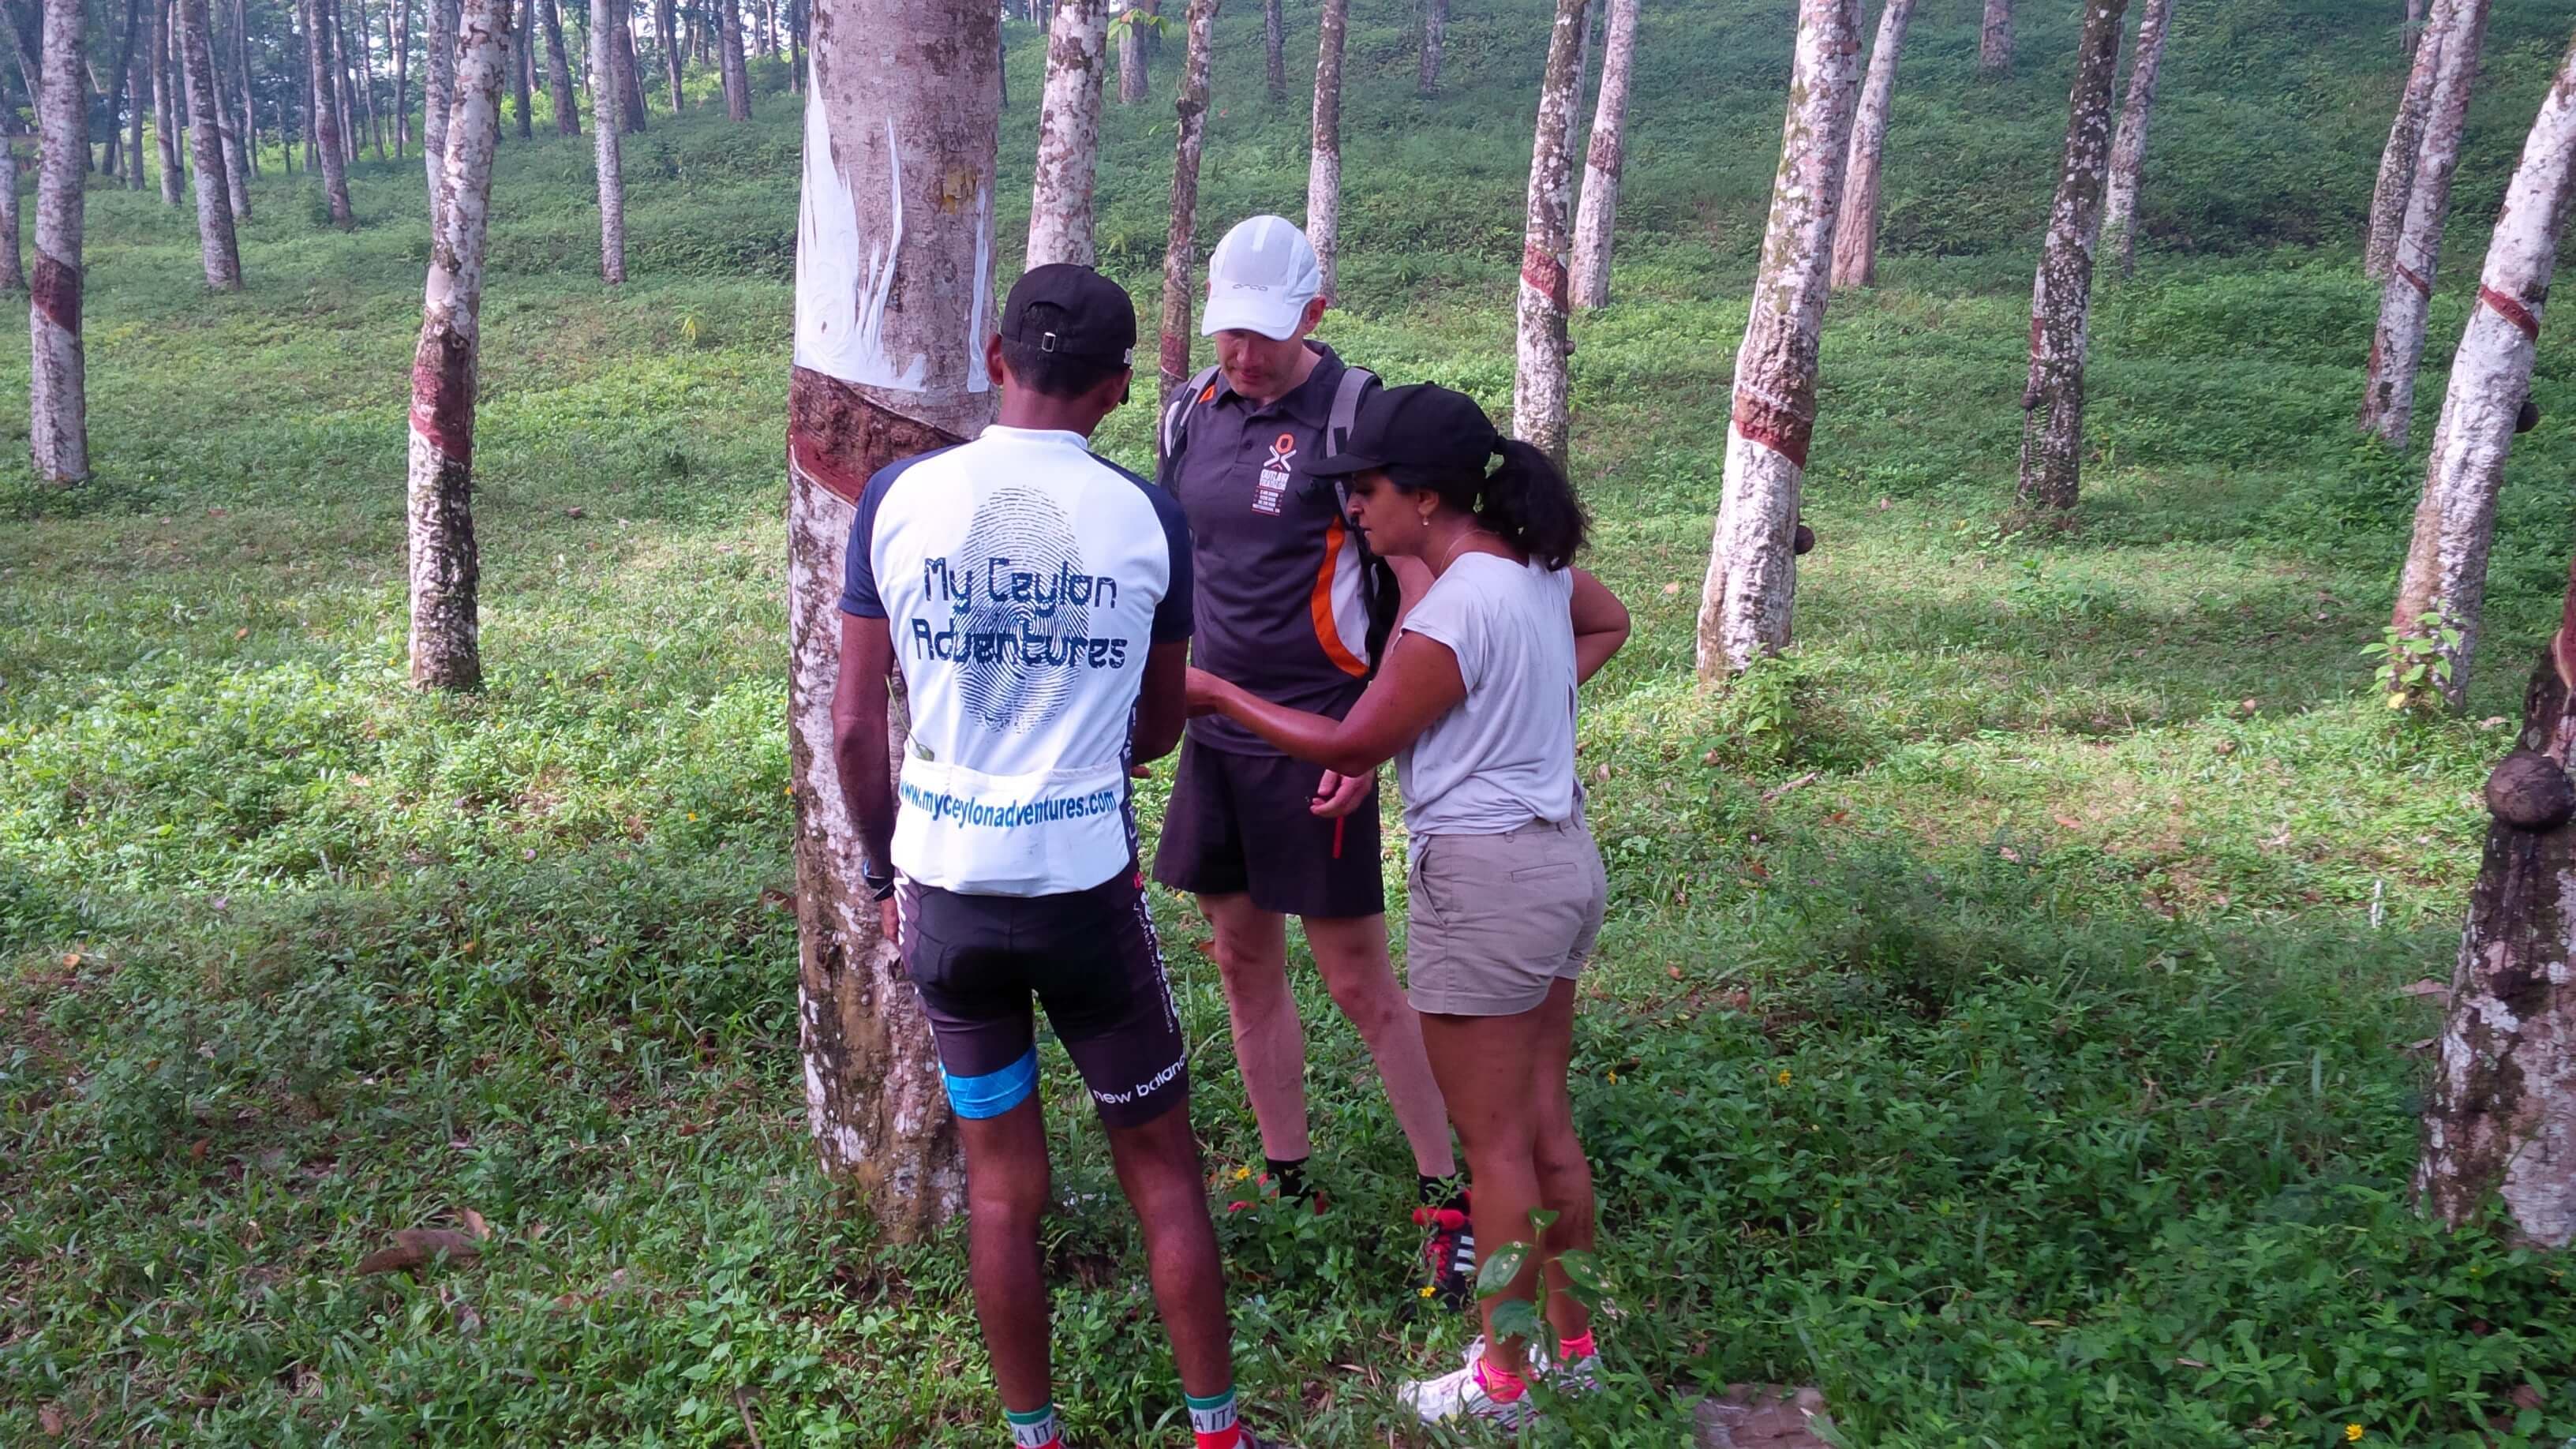 Гид рассказывает о производстве натурального каучука во время езды на велосипеде по сельской местности Китулгала в Шри-Ланке.